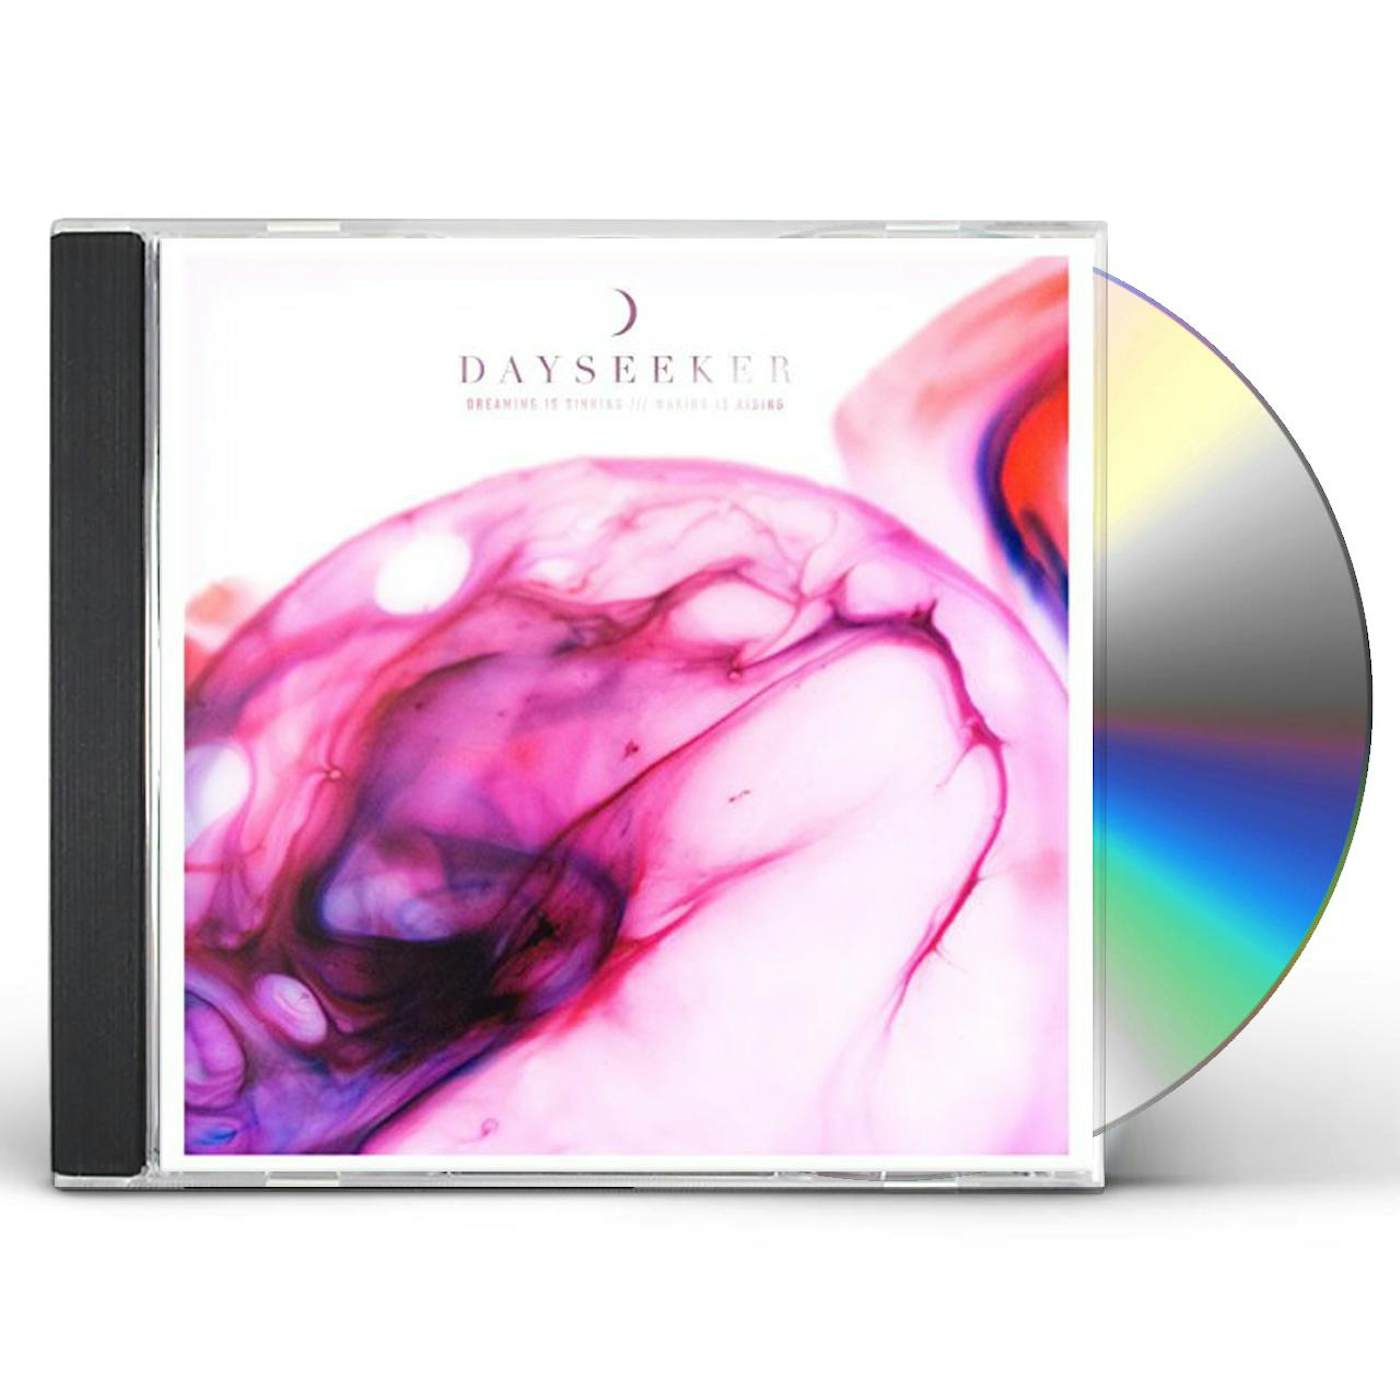 Dayseeker ORIGIN CD